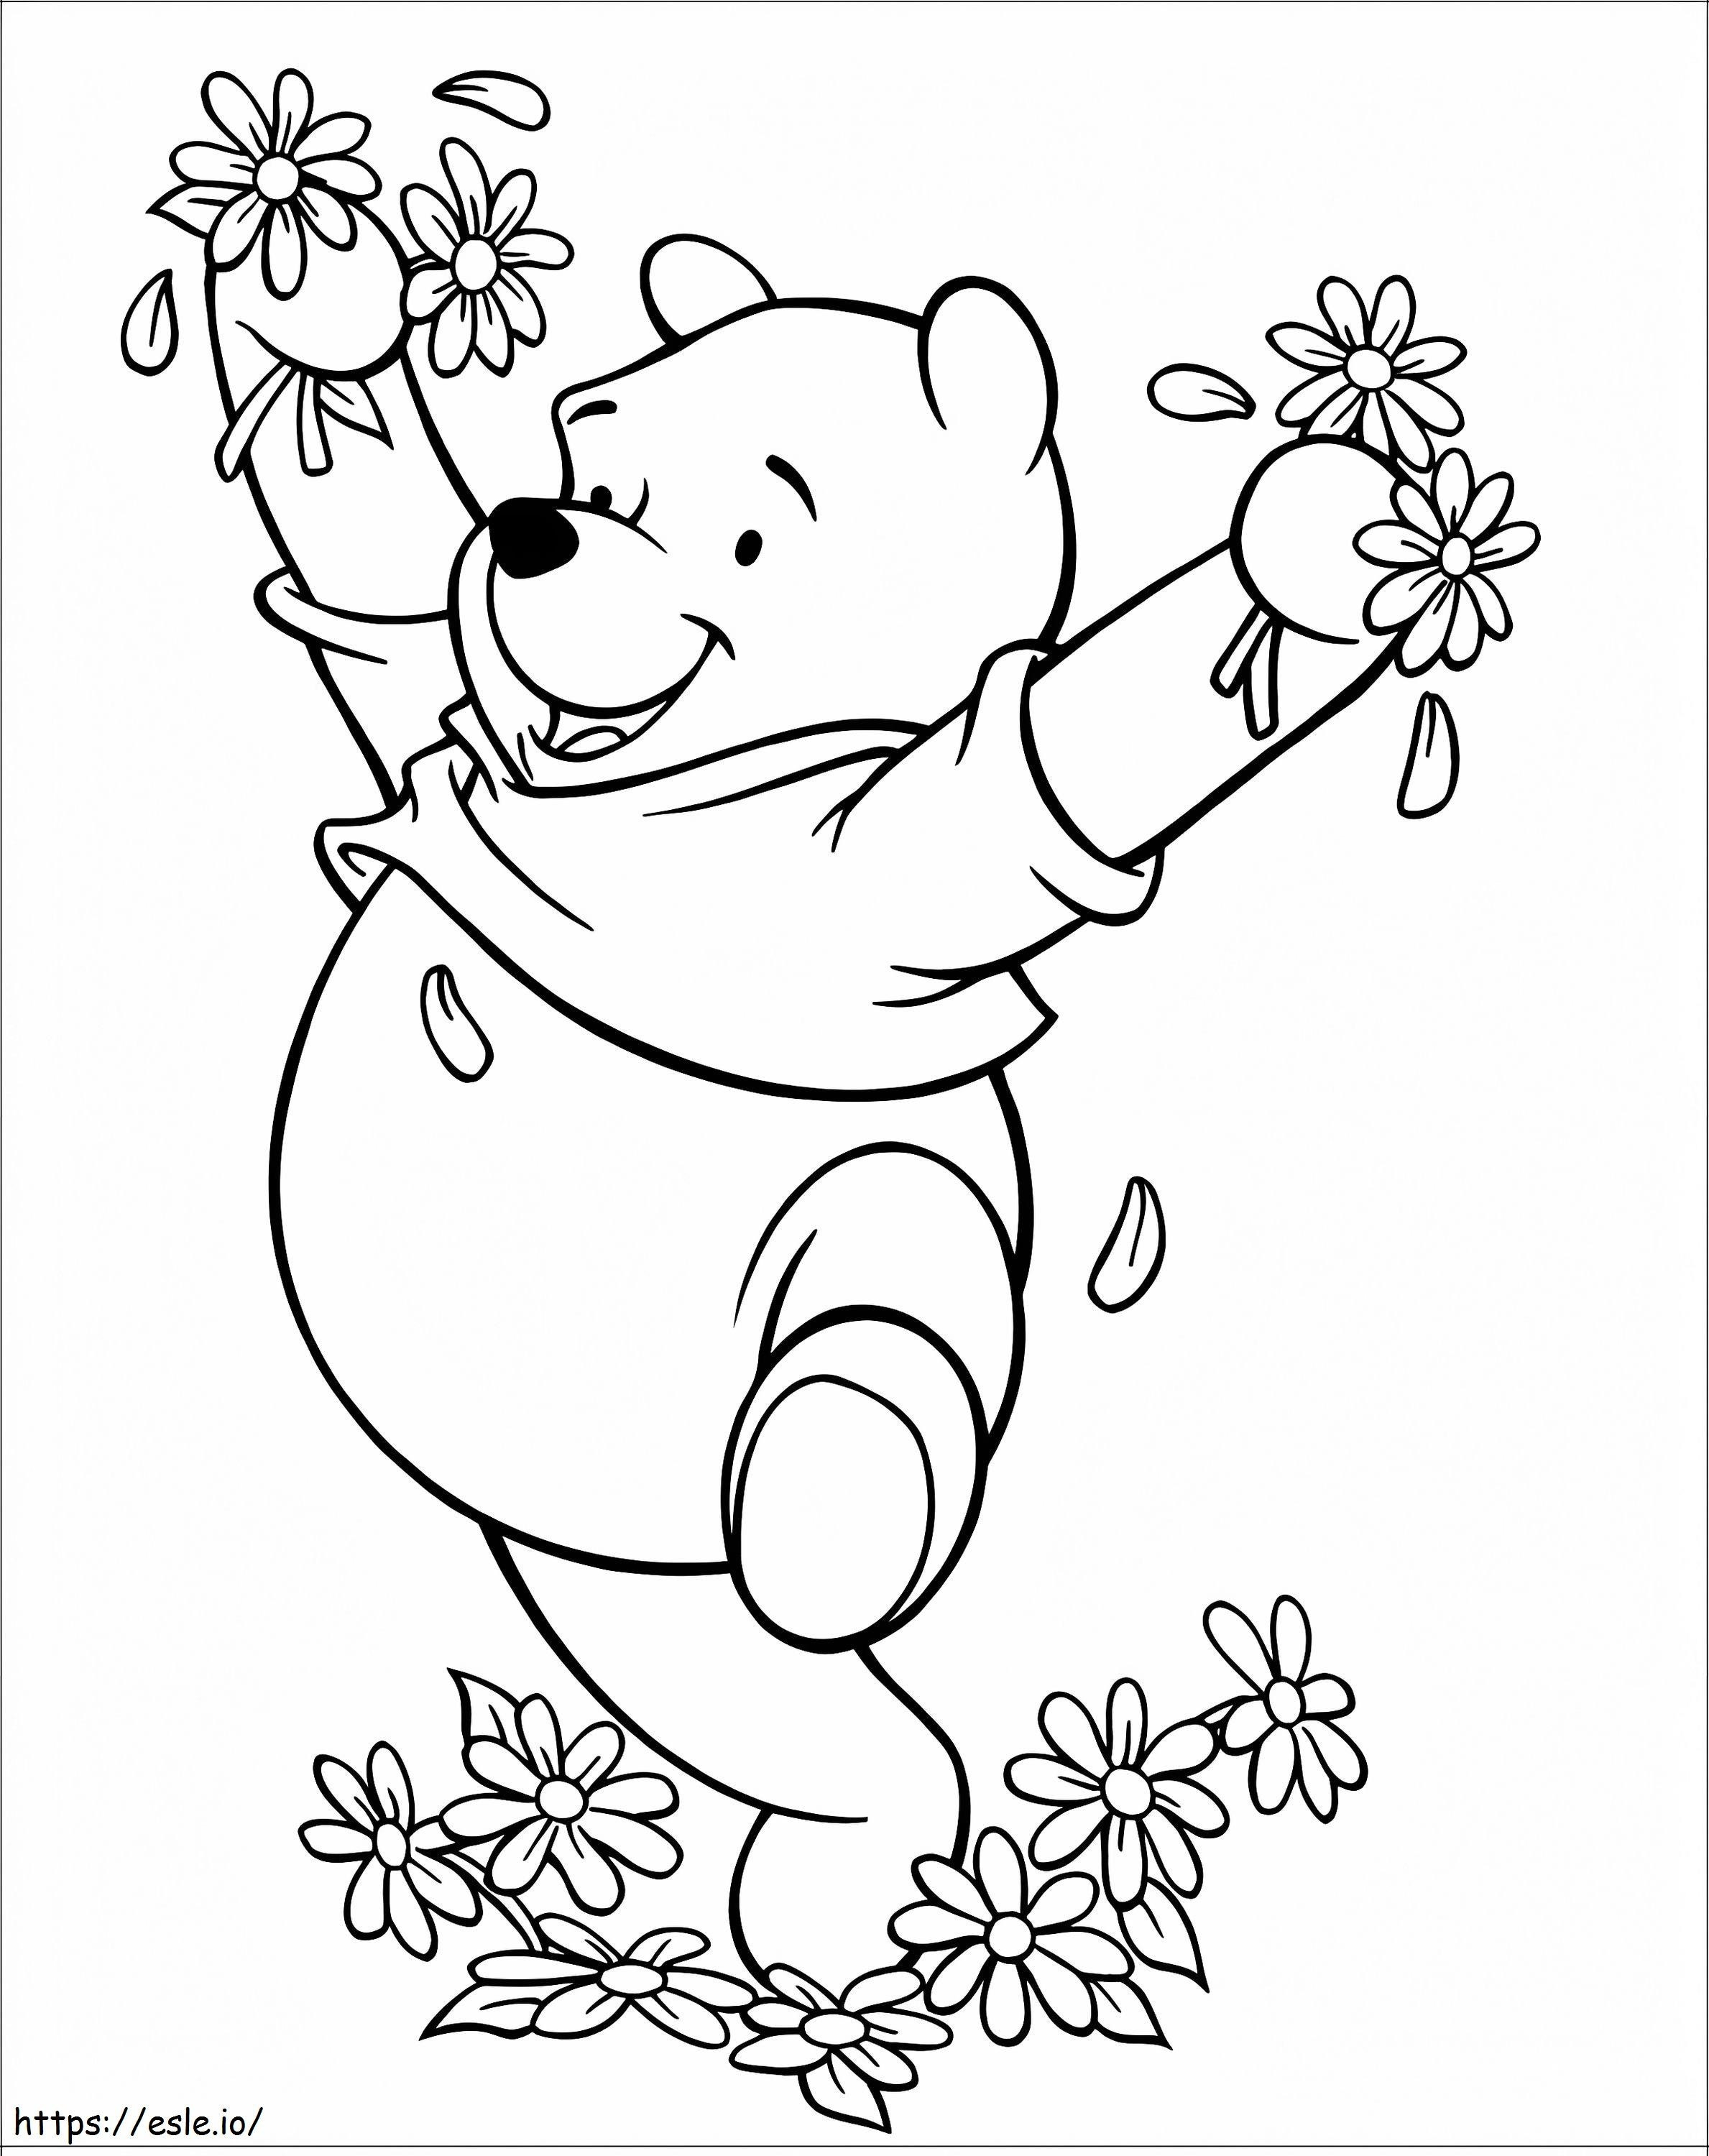 Winnie din Pooh fericit cu flori de colorat